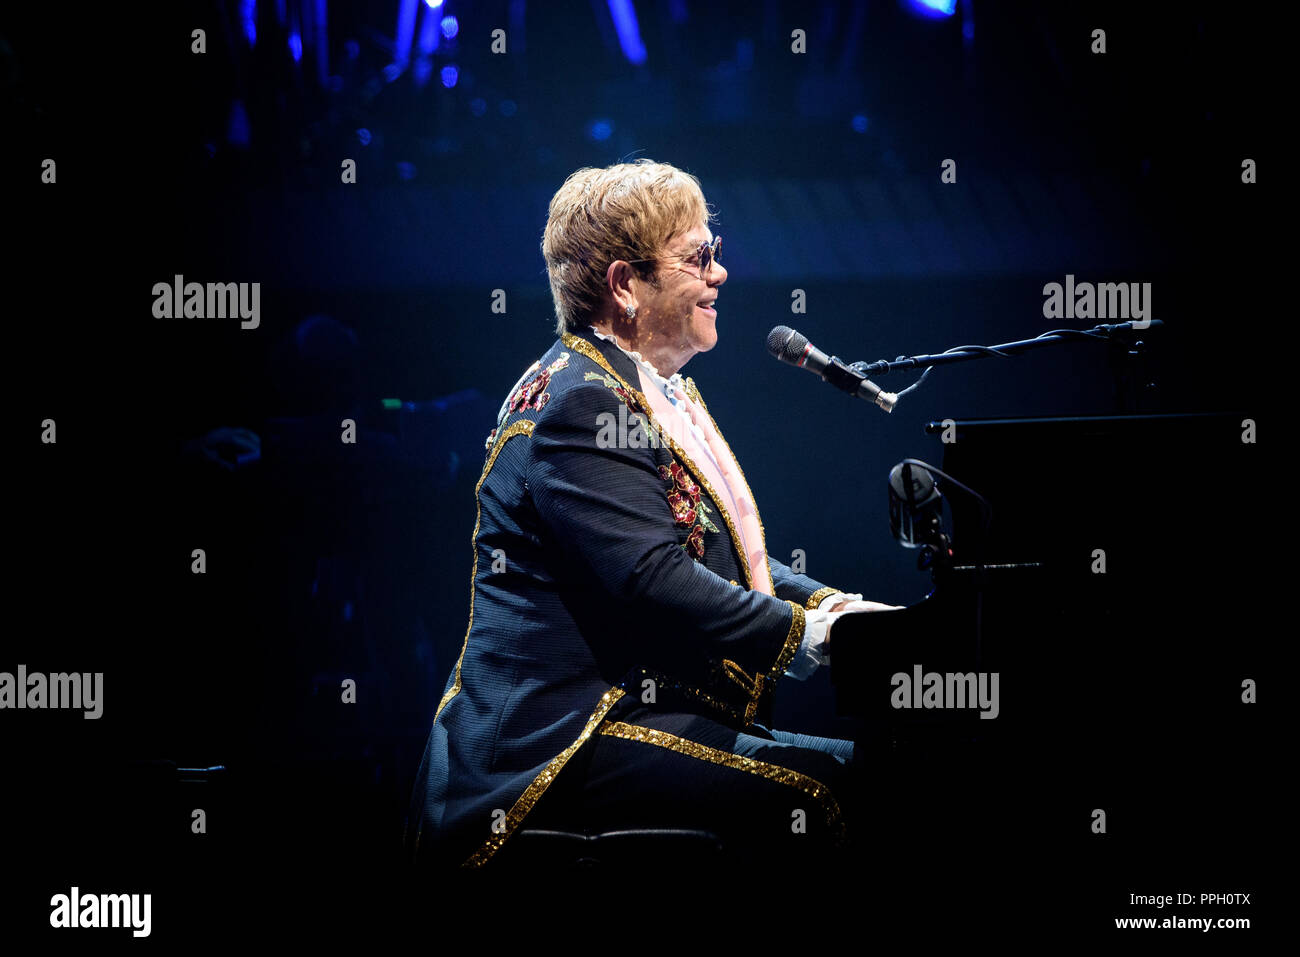 Toronto, Ontario, Canada. 25 Septembre, 2018. Chanteur/compositeur anglais Sir Elton John fait sold out show dans le cadre de son 'Yellow Brick Road Farewell Tour' à l'arène de la Banque Scotia à Toronto. Crédit : Igor/Vidyashev ZUMA Wire/Alamy Live News Banque D'Images